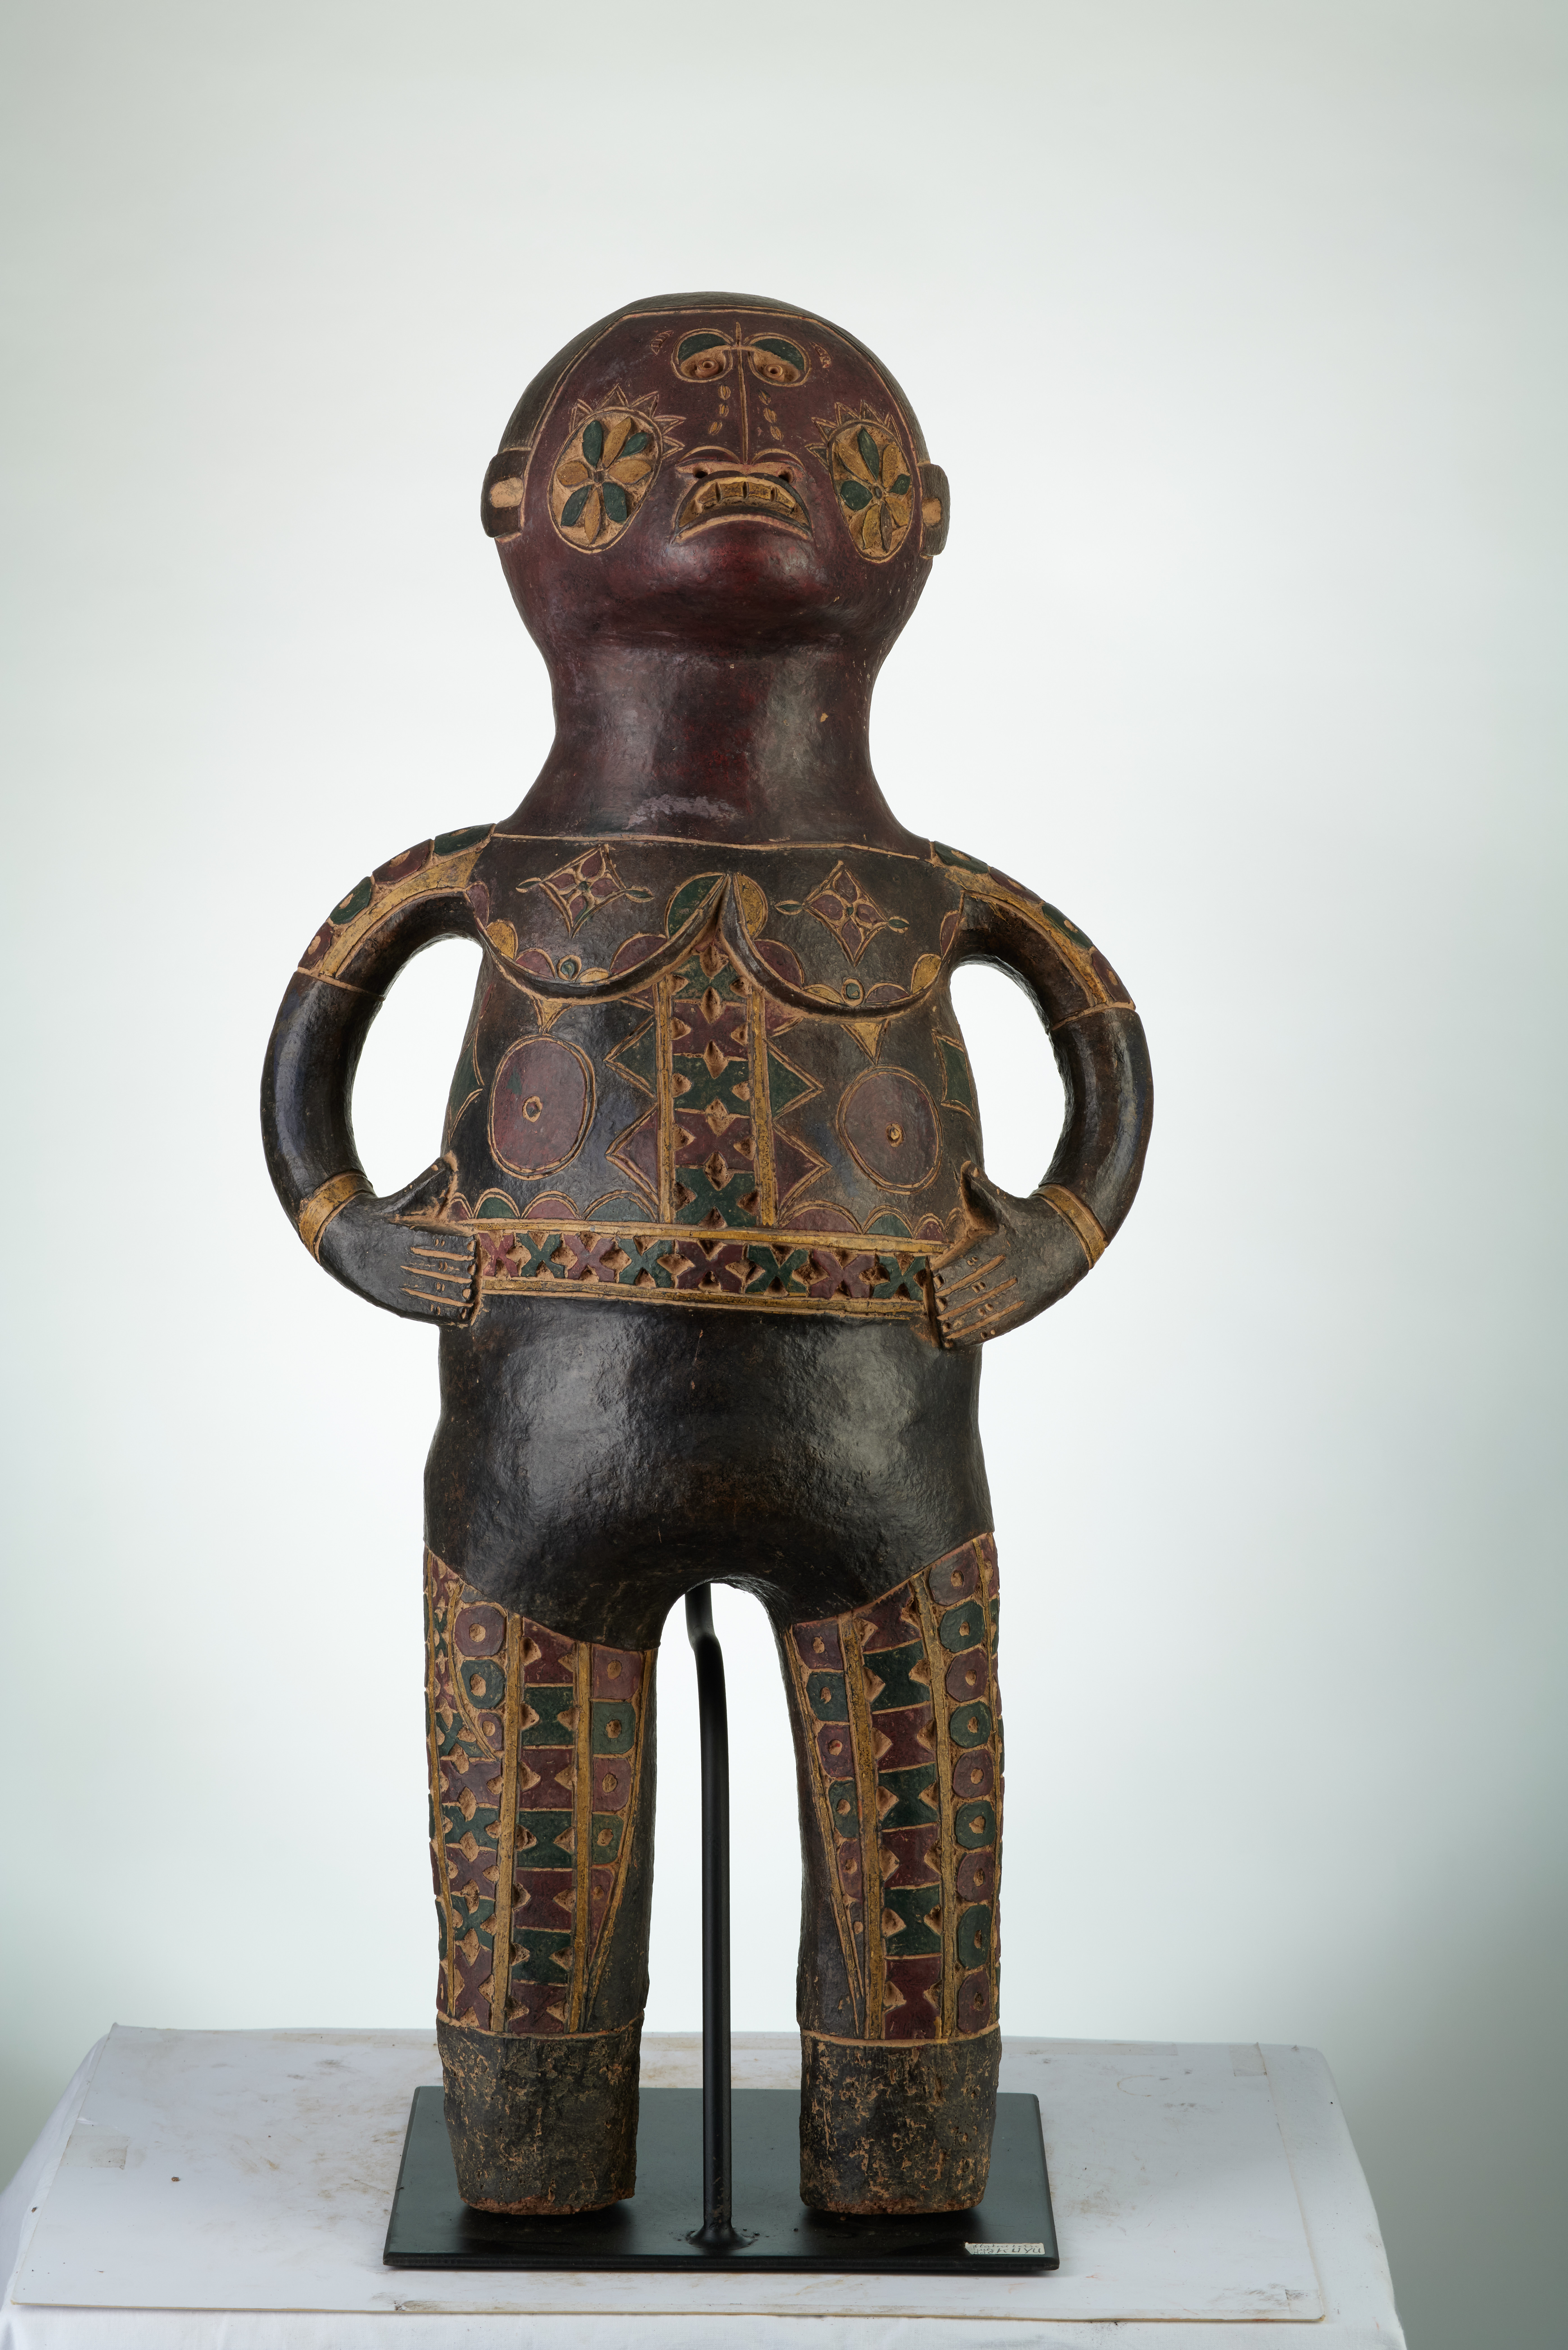  T.C.  kuyu  1834, d`afrique : rep.dem.Congo, statuette  T.C.  kuyu  1834, masque ancien africain  T.C.  kuyu  1834, art du rep.dem.Congo - Art Africain, collection privées Belgique. Statue africaine de la tribu des  T.C.  kuyu  1834, provenant du rep.dem.Congo, 1834:Terre cuite KUYU: Les kuyu sont  établi dans la R.d.C.lelong de la rivière Kuyu (CO 
 NGO) et au Gabon-Est.Il sont très spécialisé en Sculptures de terre cuite H.75cm.(col Pères blancs à Lille 1973)Milieu 20eme sc.

Beeld in aardewerk KUYU.Heel gekend voor hun beelden.Ze bevinden zich in D.R.C. en in t